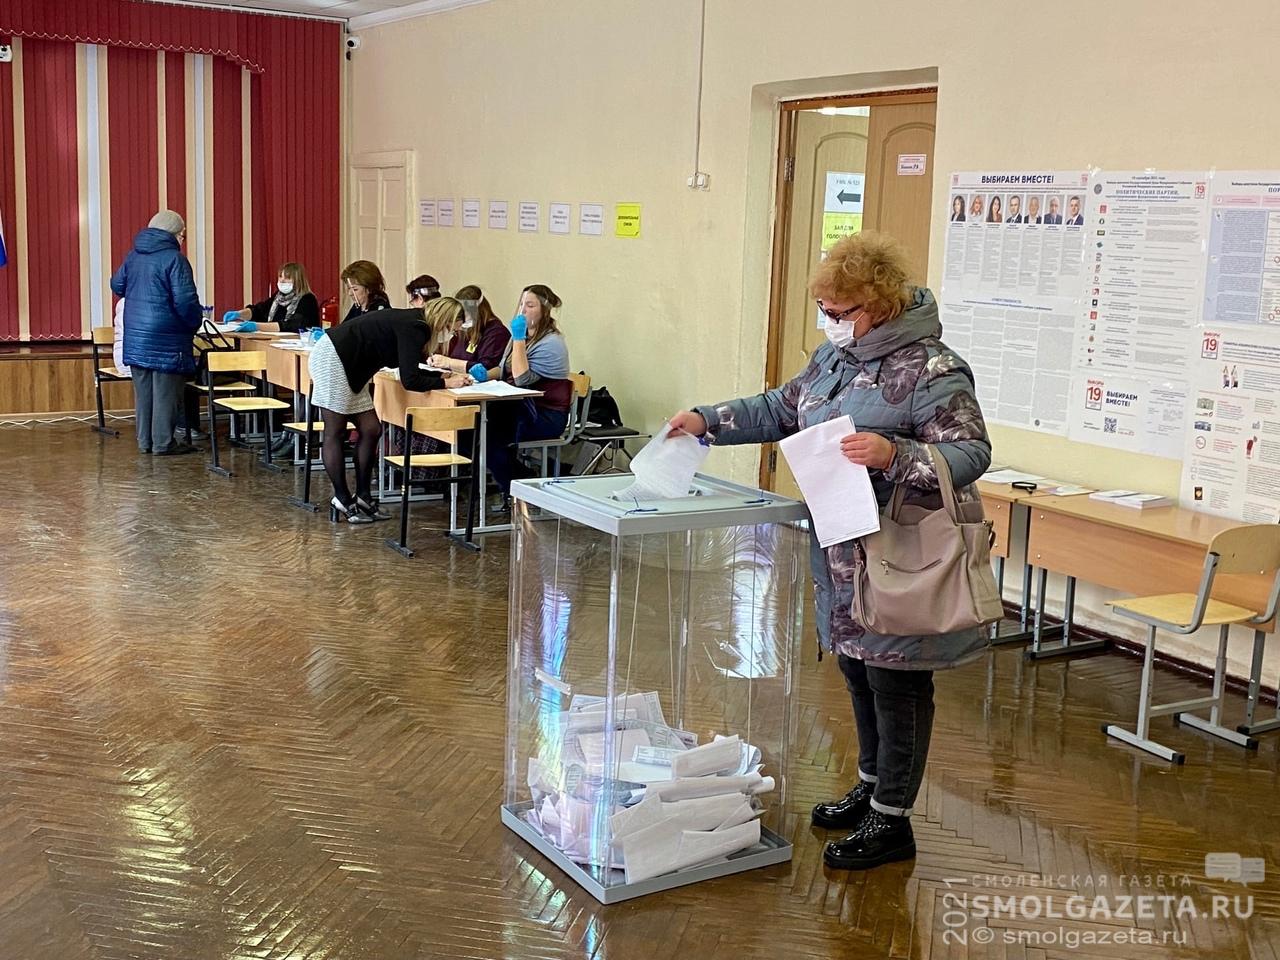 Более 25% смолян уже приняли участие в голосовании на выборах депутатов Госдумы